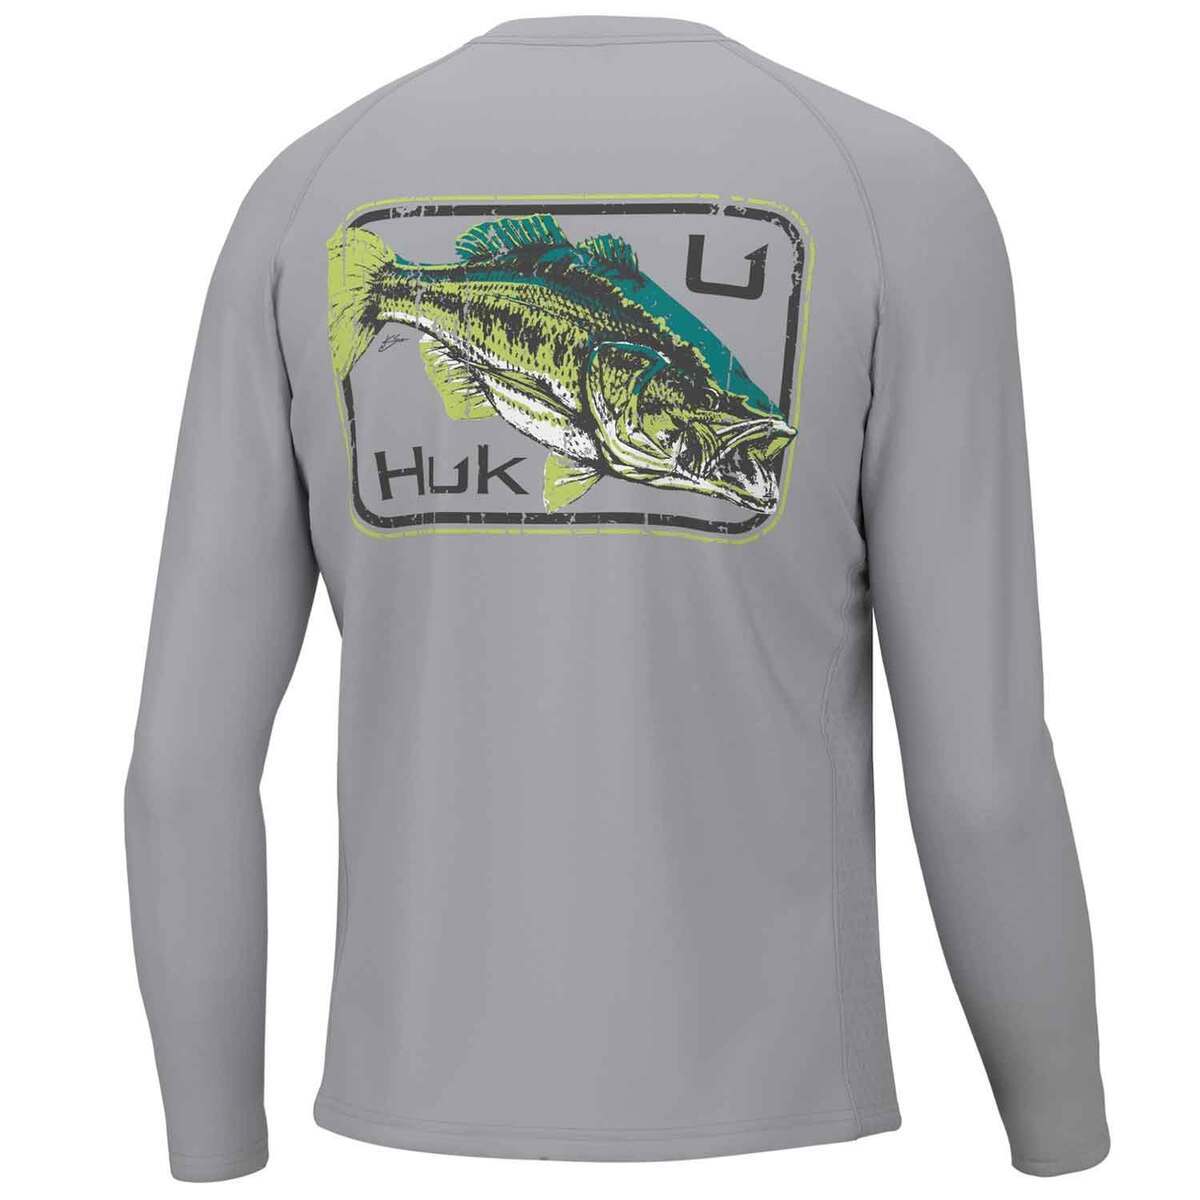 https://www.sportsmans.com/medias/huk-mens-vintage-largie-pursuit-long-sleeve-fishing-shirt-harbor-mist-m-1813692-1.jpg?context=bWFzdGVyfGltYWdlc3w2MDYwMnxpbWFnZS9qcGVnfGFEYzBMMmd5WXk4eE1USTNPVEl3TXpJd05URTFNQzh4TWpBd0xXTnZiblpsY25OcGIyNUdiM0p0WVhSZlltRnpaUzFqYjI1MlpYSnphVzl1Um05eWJXRjBYM050ZHkweE9ERXpOamt5TFRFdWFuQm58ZWU5MWNlMTFhODZlMDQxZGIzZjYzN2I1MmU2ZDY3YmE4OTEyMjY2ZWQwZGNjYjRiY2NiOWY3MDFlYjRmZDU0MQ